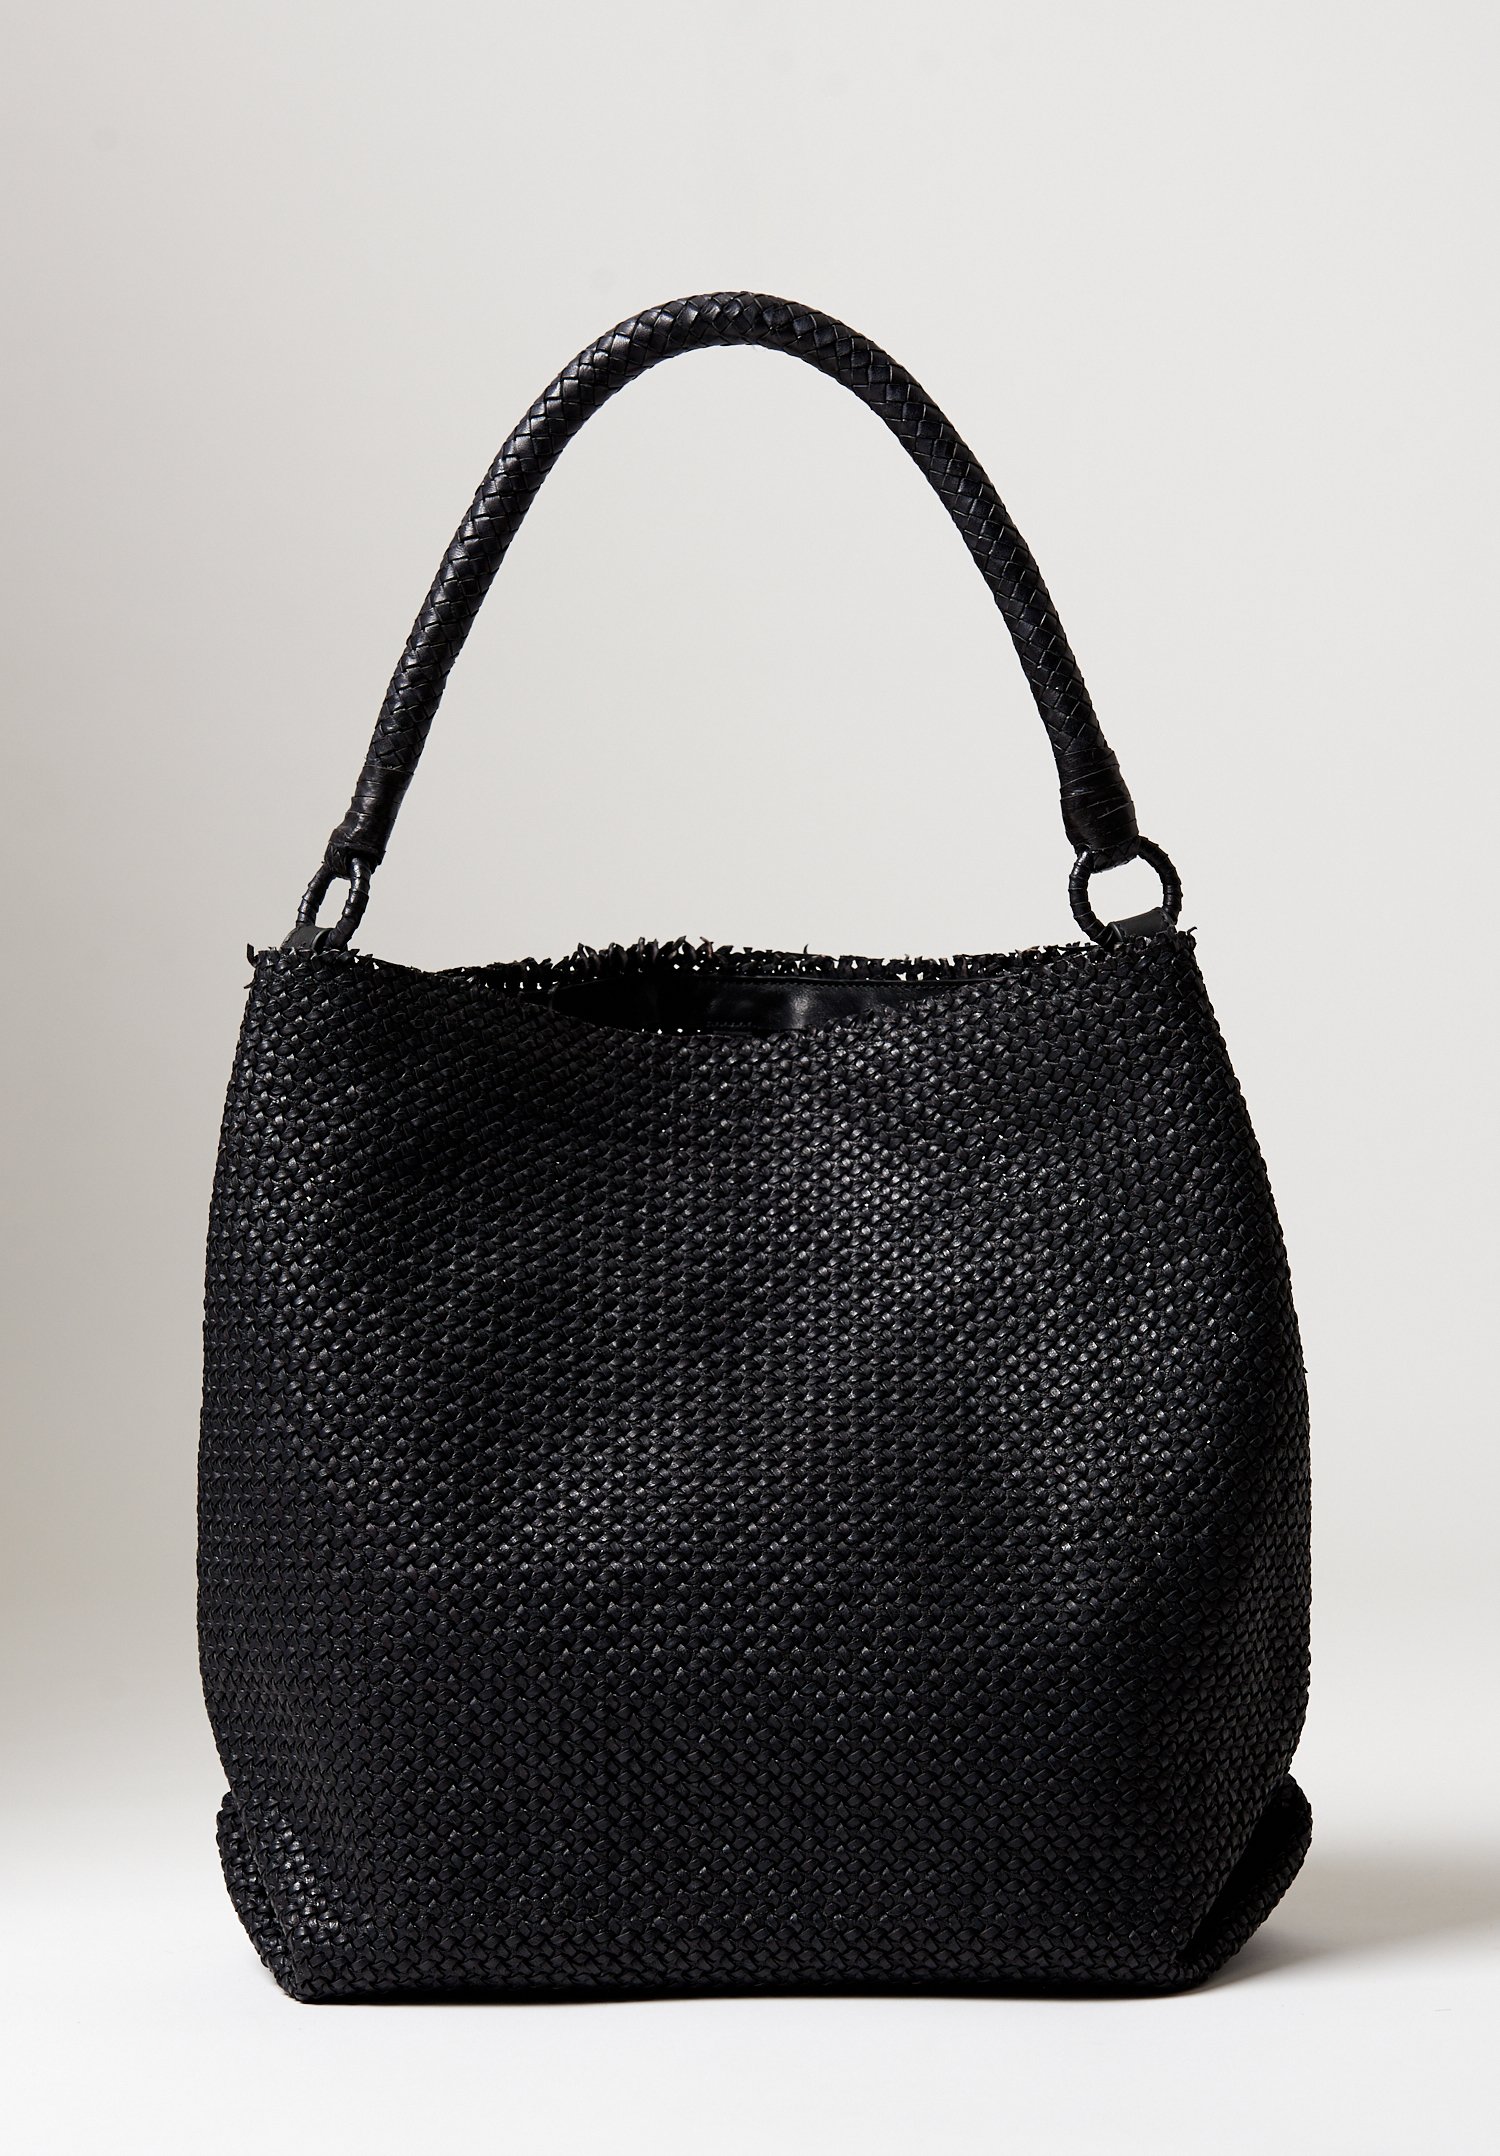 Massimo Palomba Calypso Star Bag in Black | Santa Fe Dry Goods ...